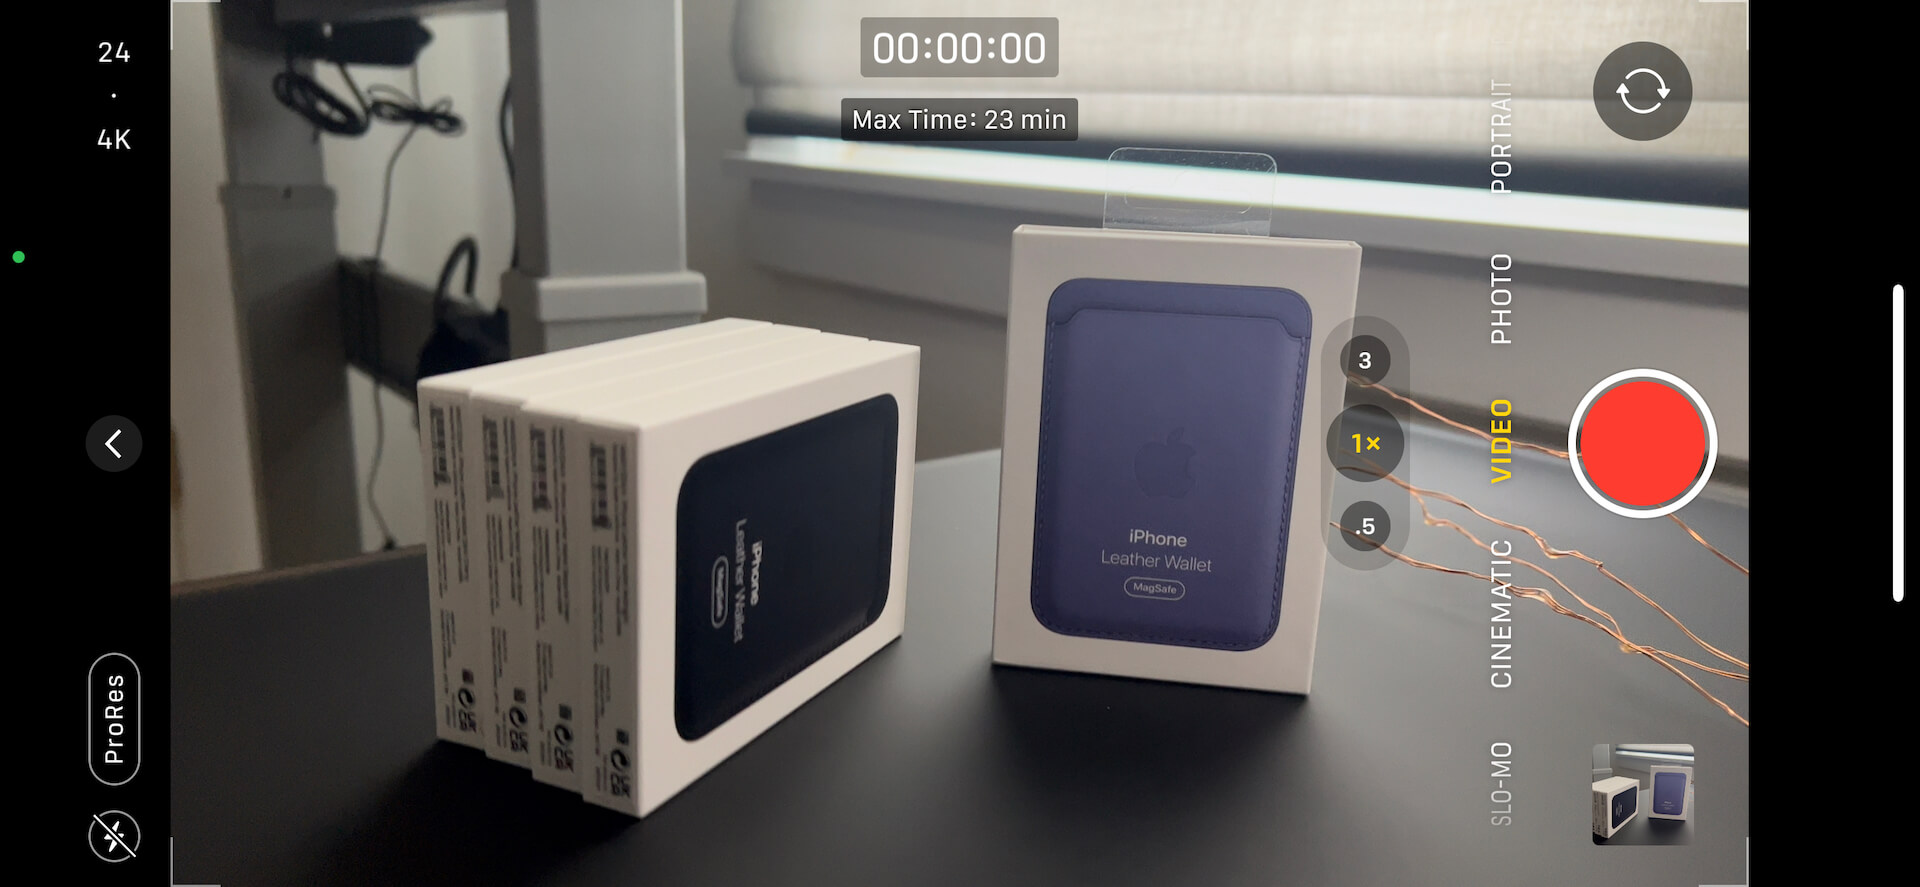 Una cámara del iPhone 13 Pro y Pro Max que graba en ProRes con una visualización del tiempo máximo